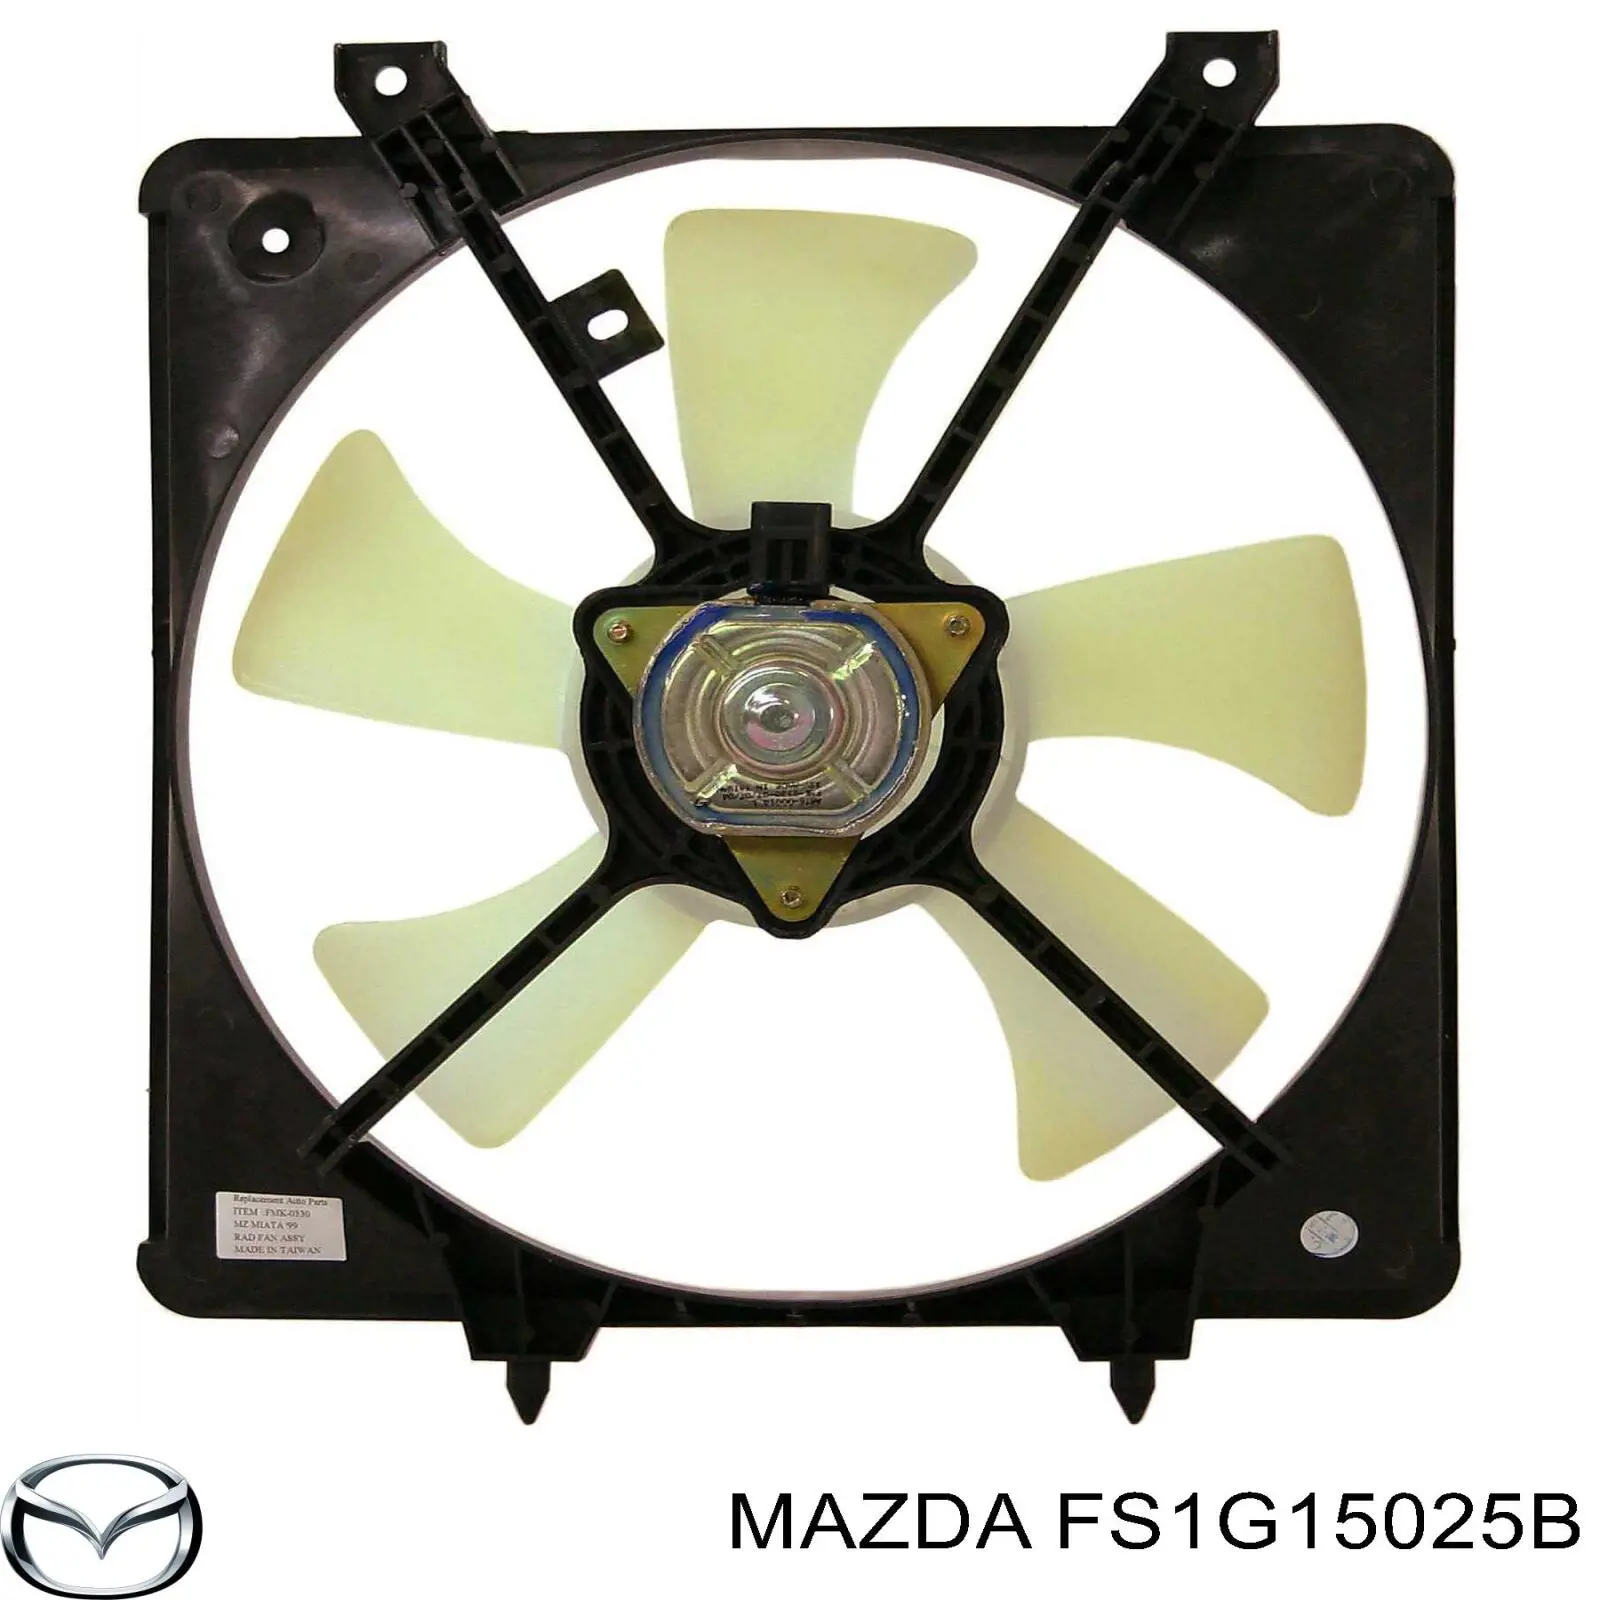 FS1G15025B Mazda difusor de radiador, ventilador de refrigeración, condensador del aire acondicionado, completo con motor y rodete